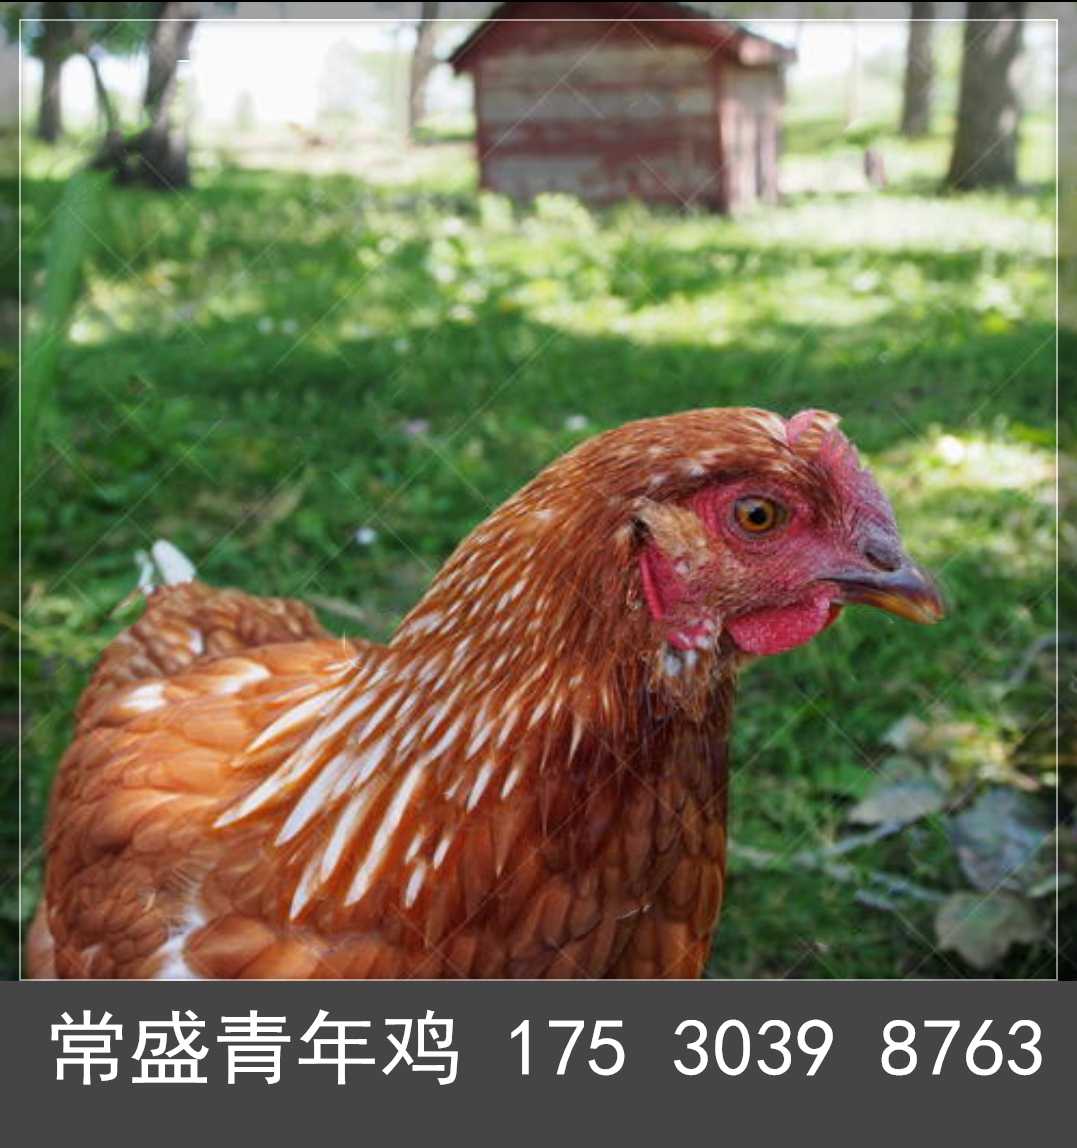 佳木斯海兰褐青年鸡秋季管理 海兰褐蛋鸡青年鸡通风和保温措施5